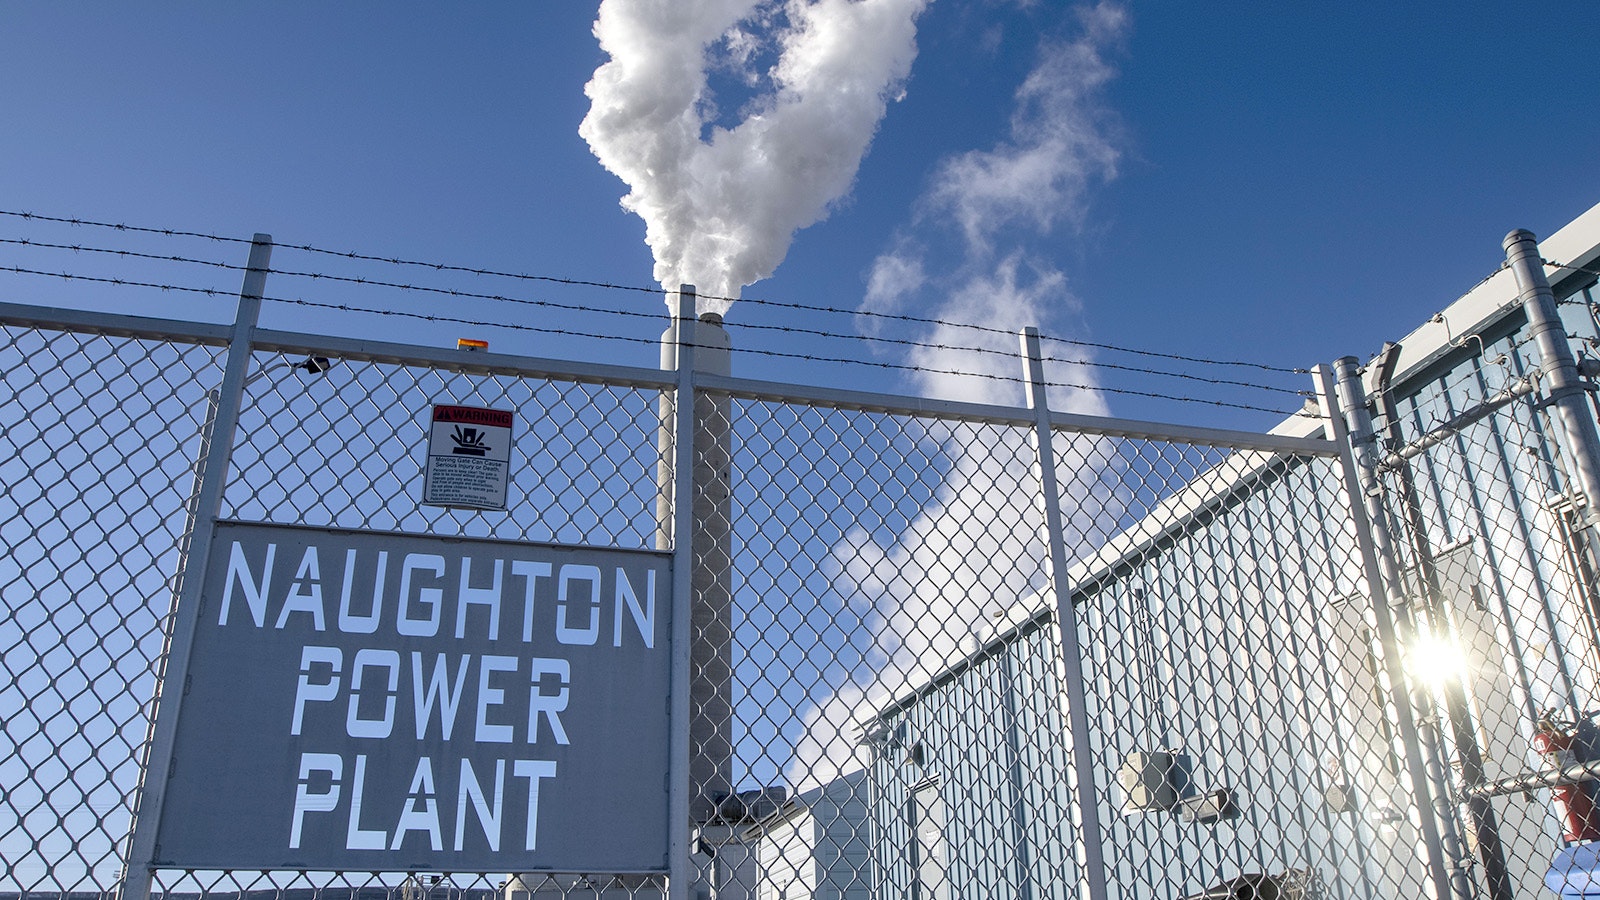 Naughton power plant 6 29 23